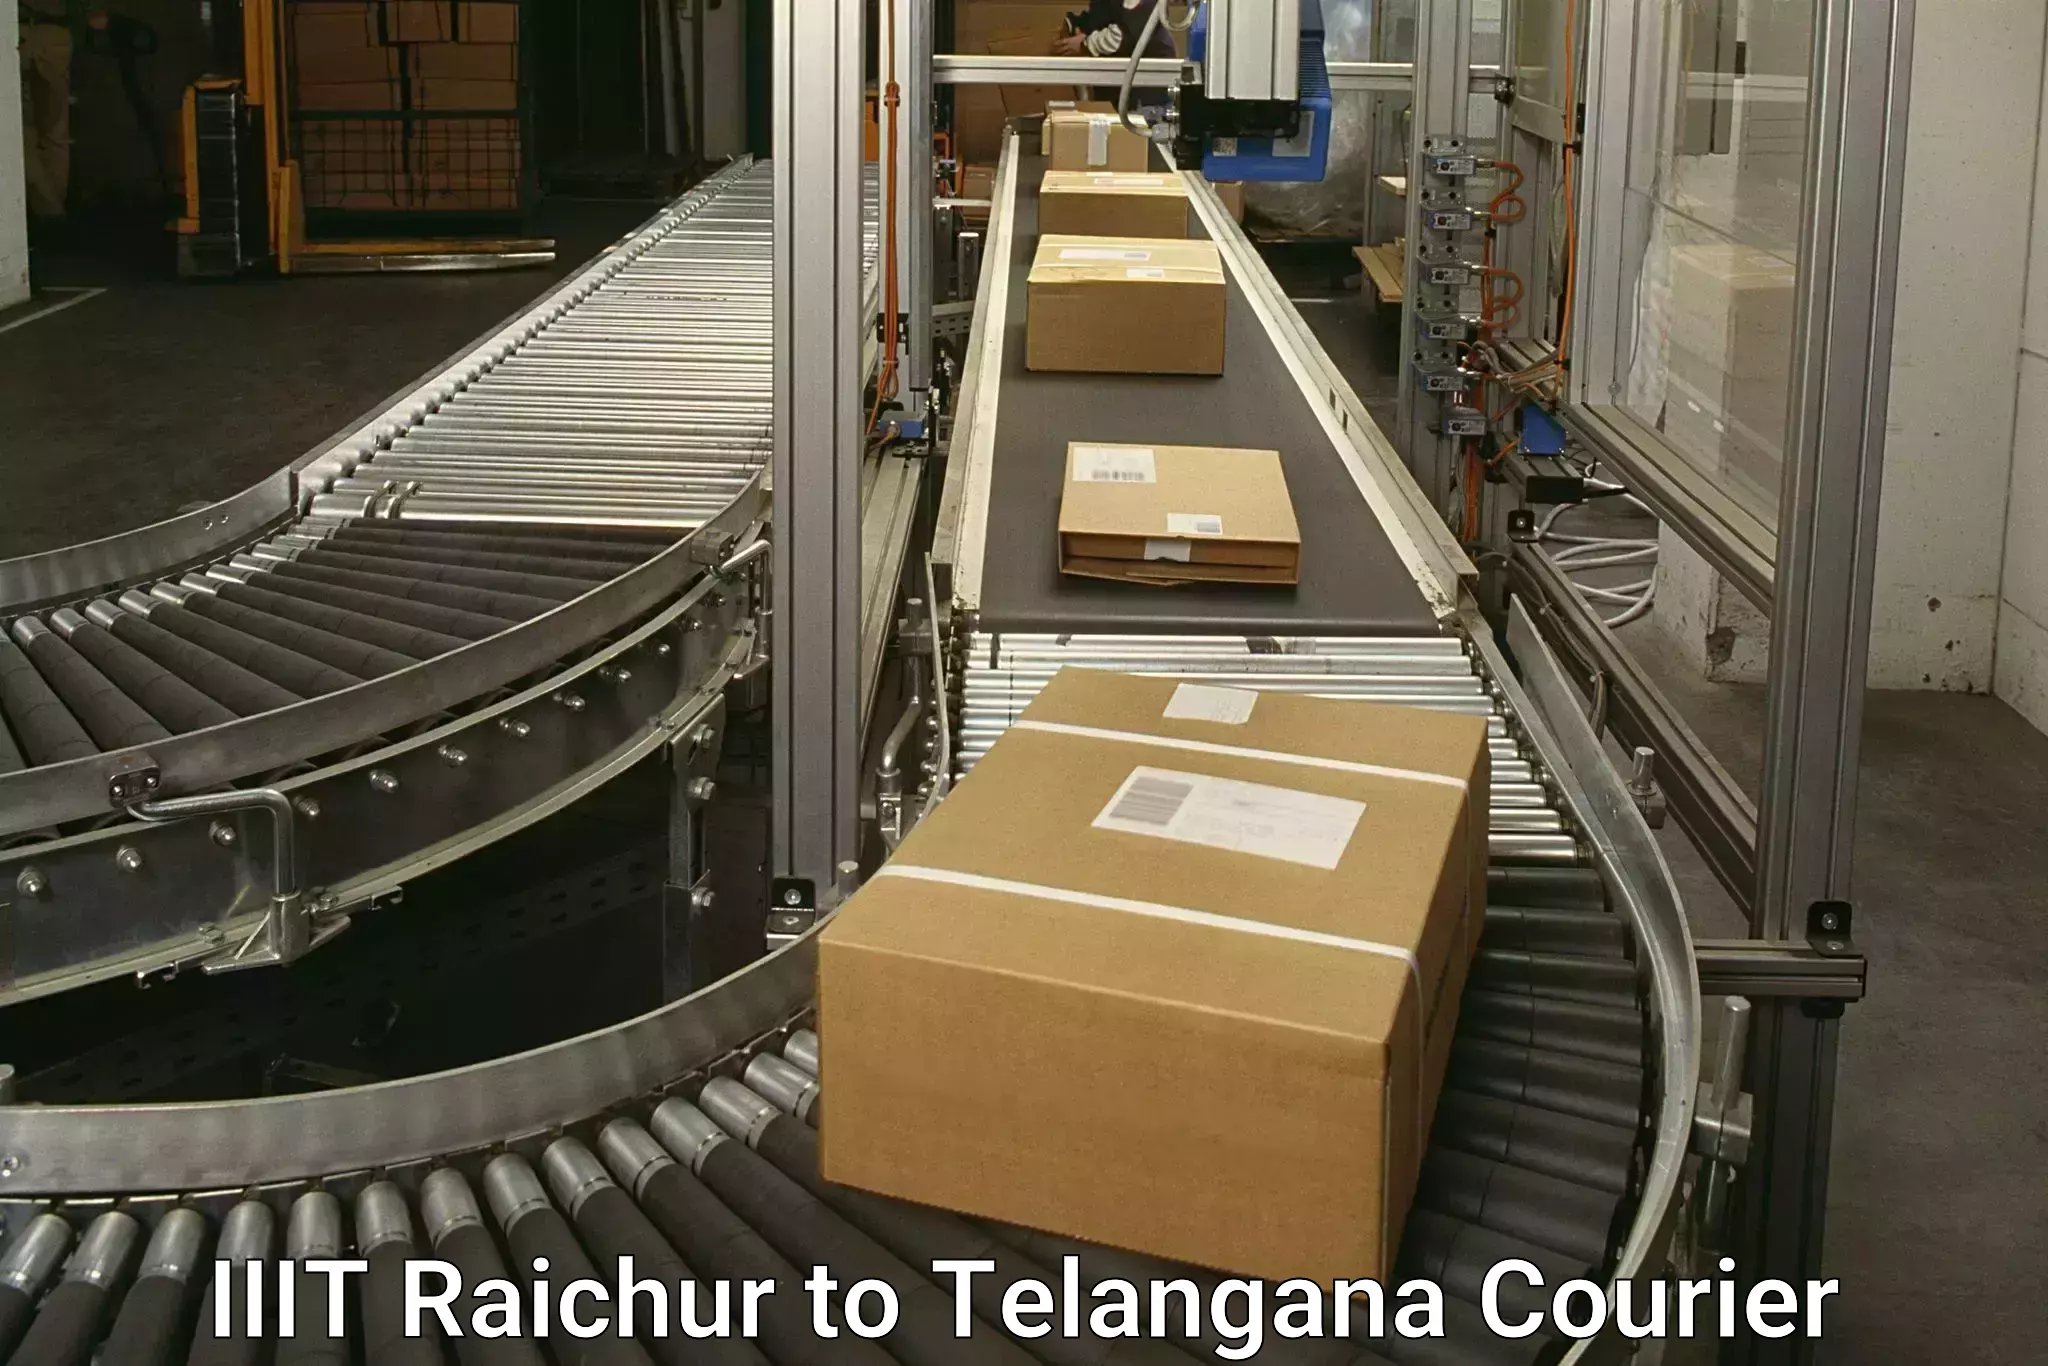 High-capacity parcel service IIIT Raichur to Dharmapuri Jagtial